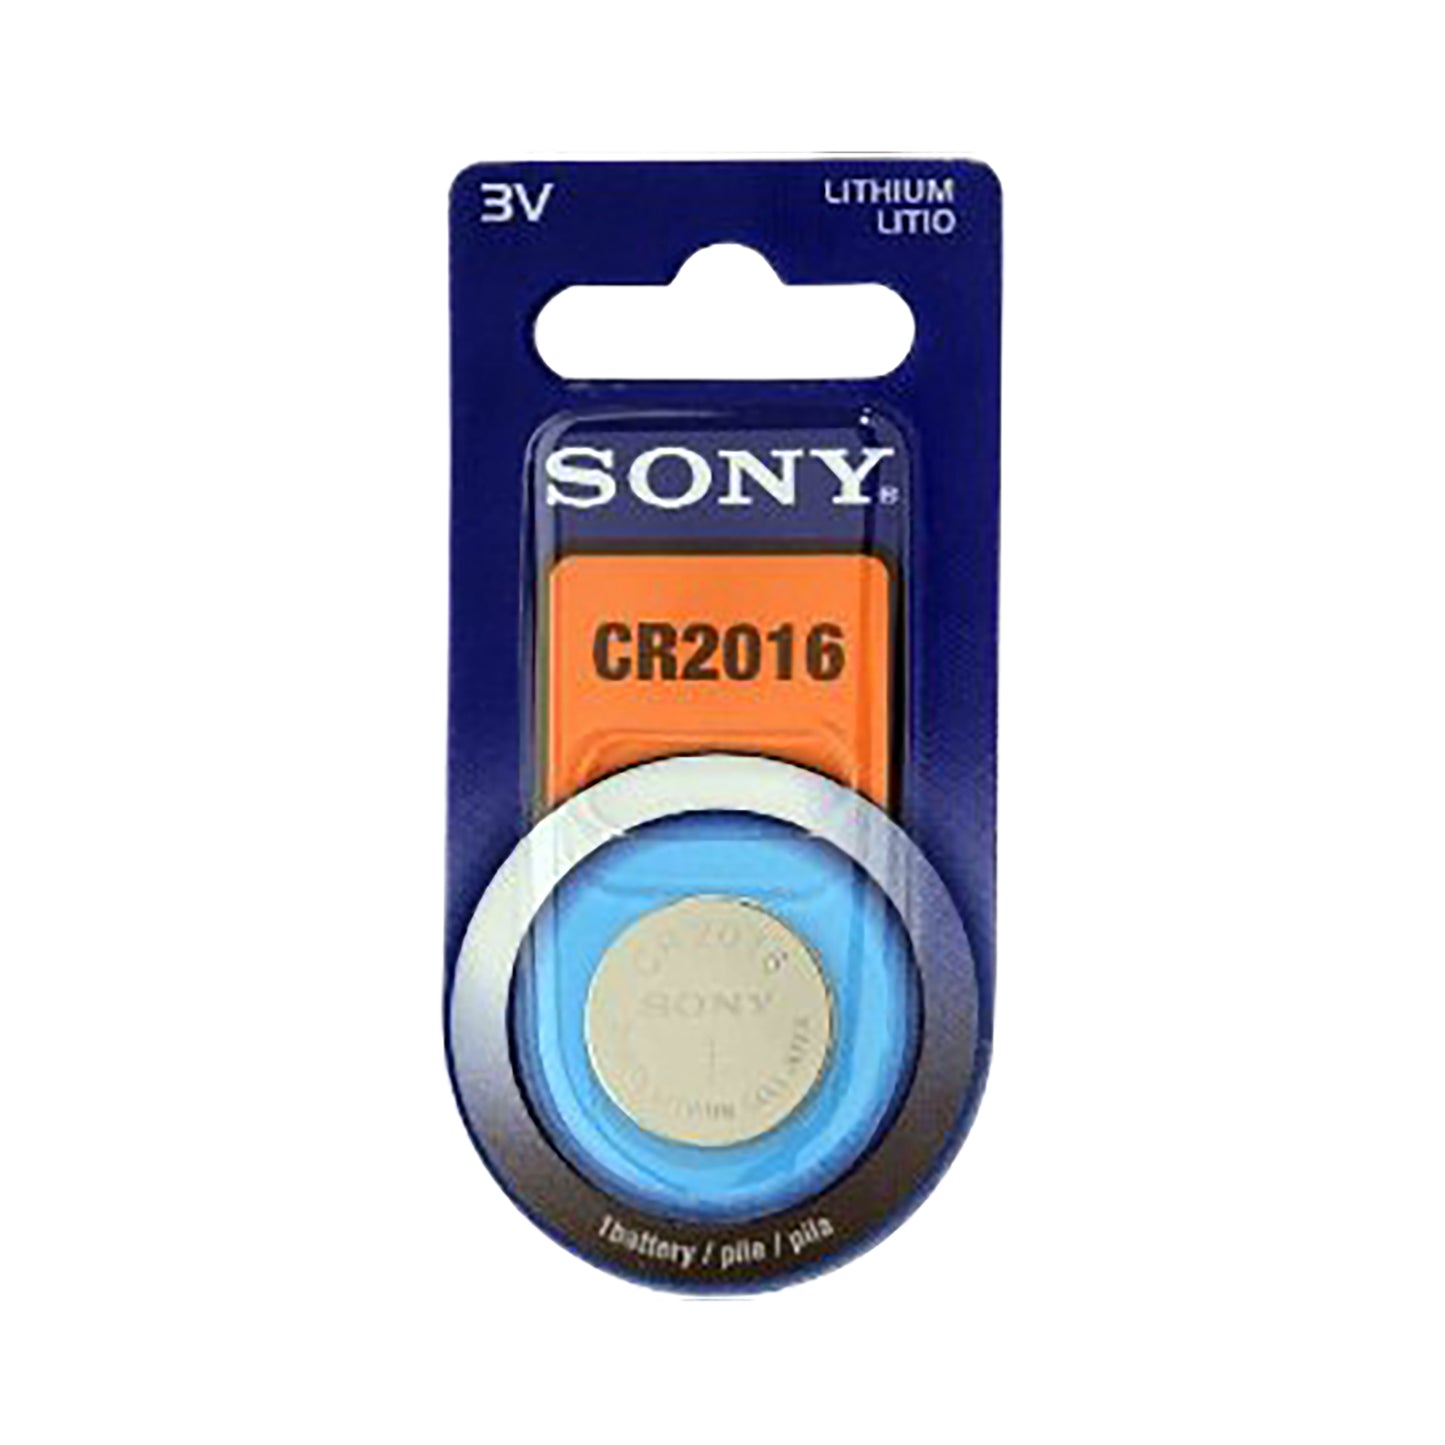 SON-CR2016-1 - дисковая батарейка Sony CR2016, 3 В (1 шт. в блистере)